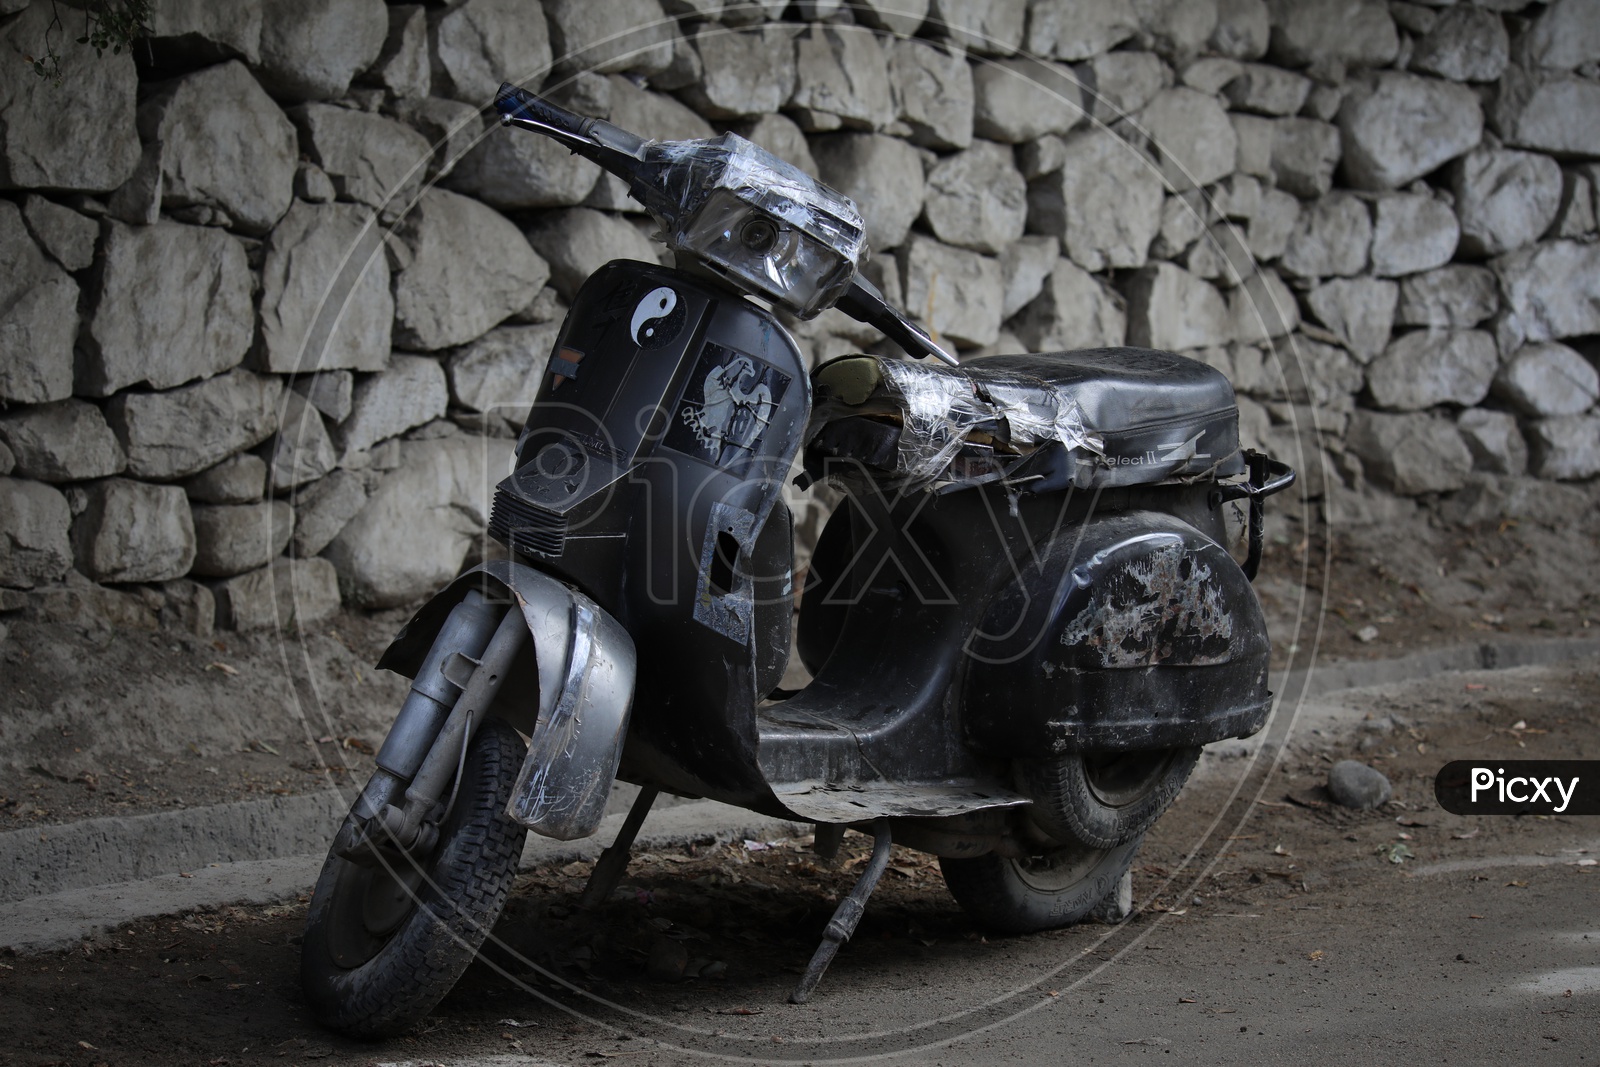 An Old Bajaj Vespa In Leh - 2 wheeler